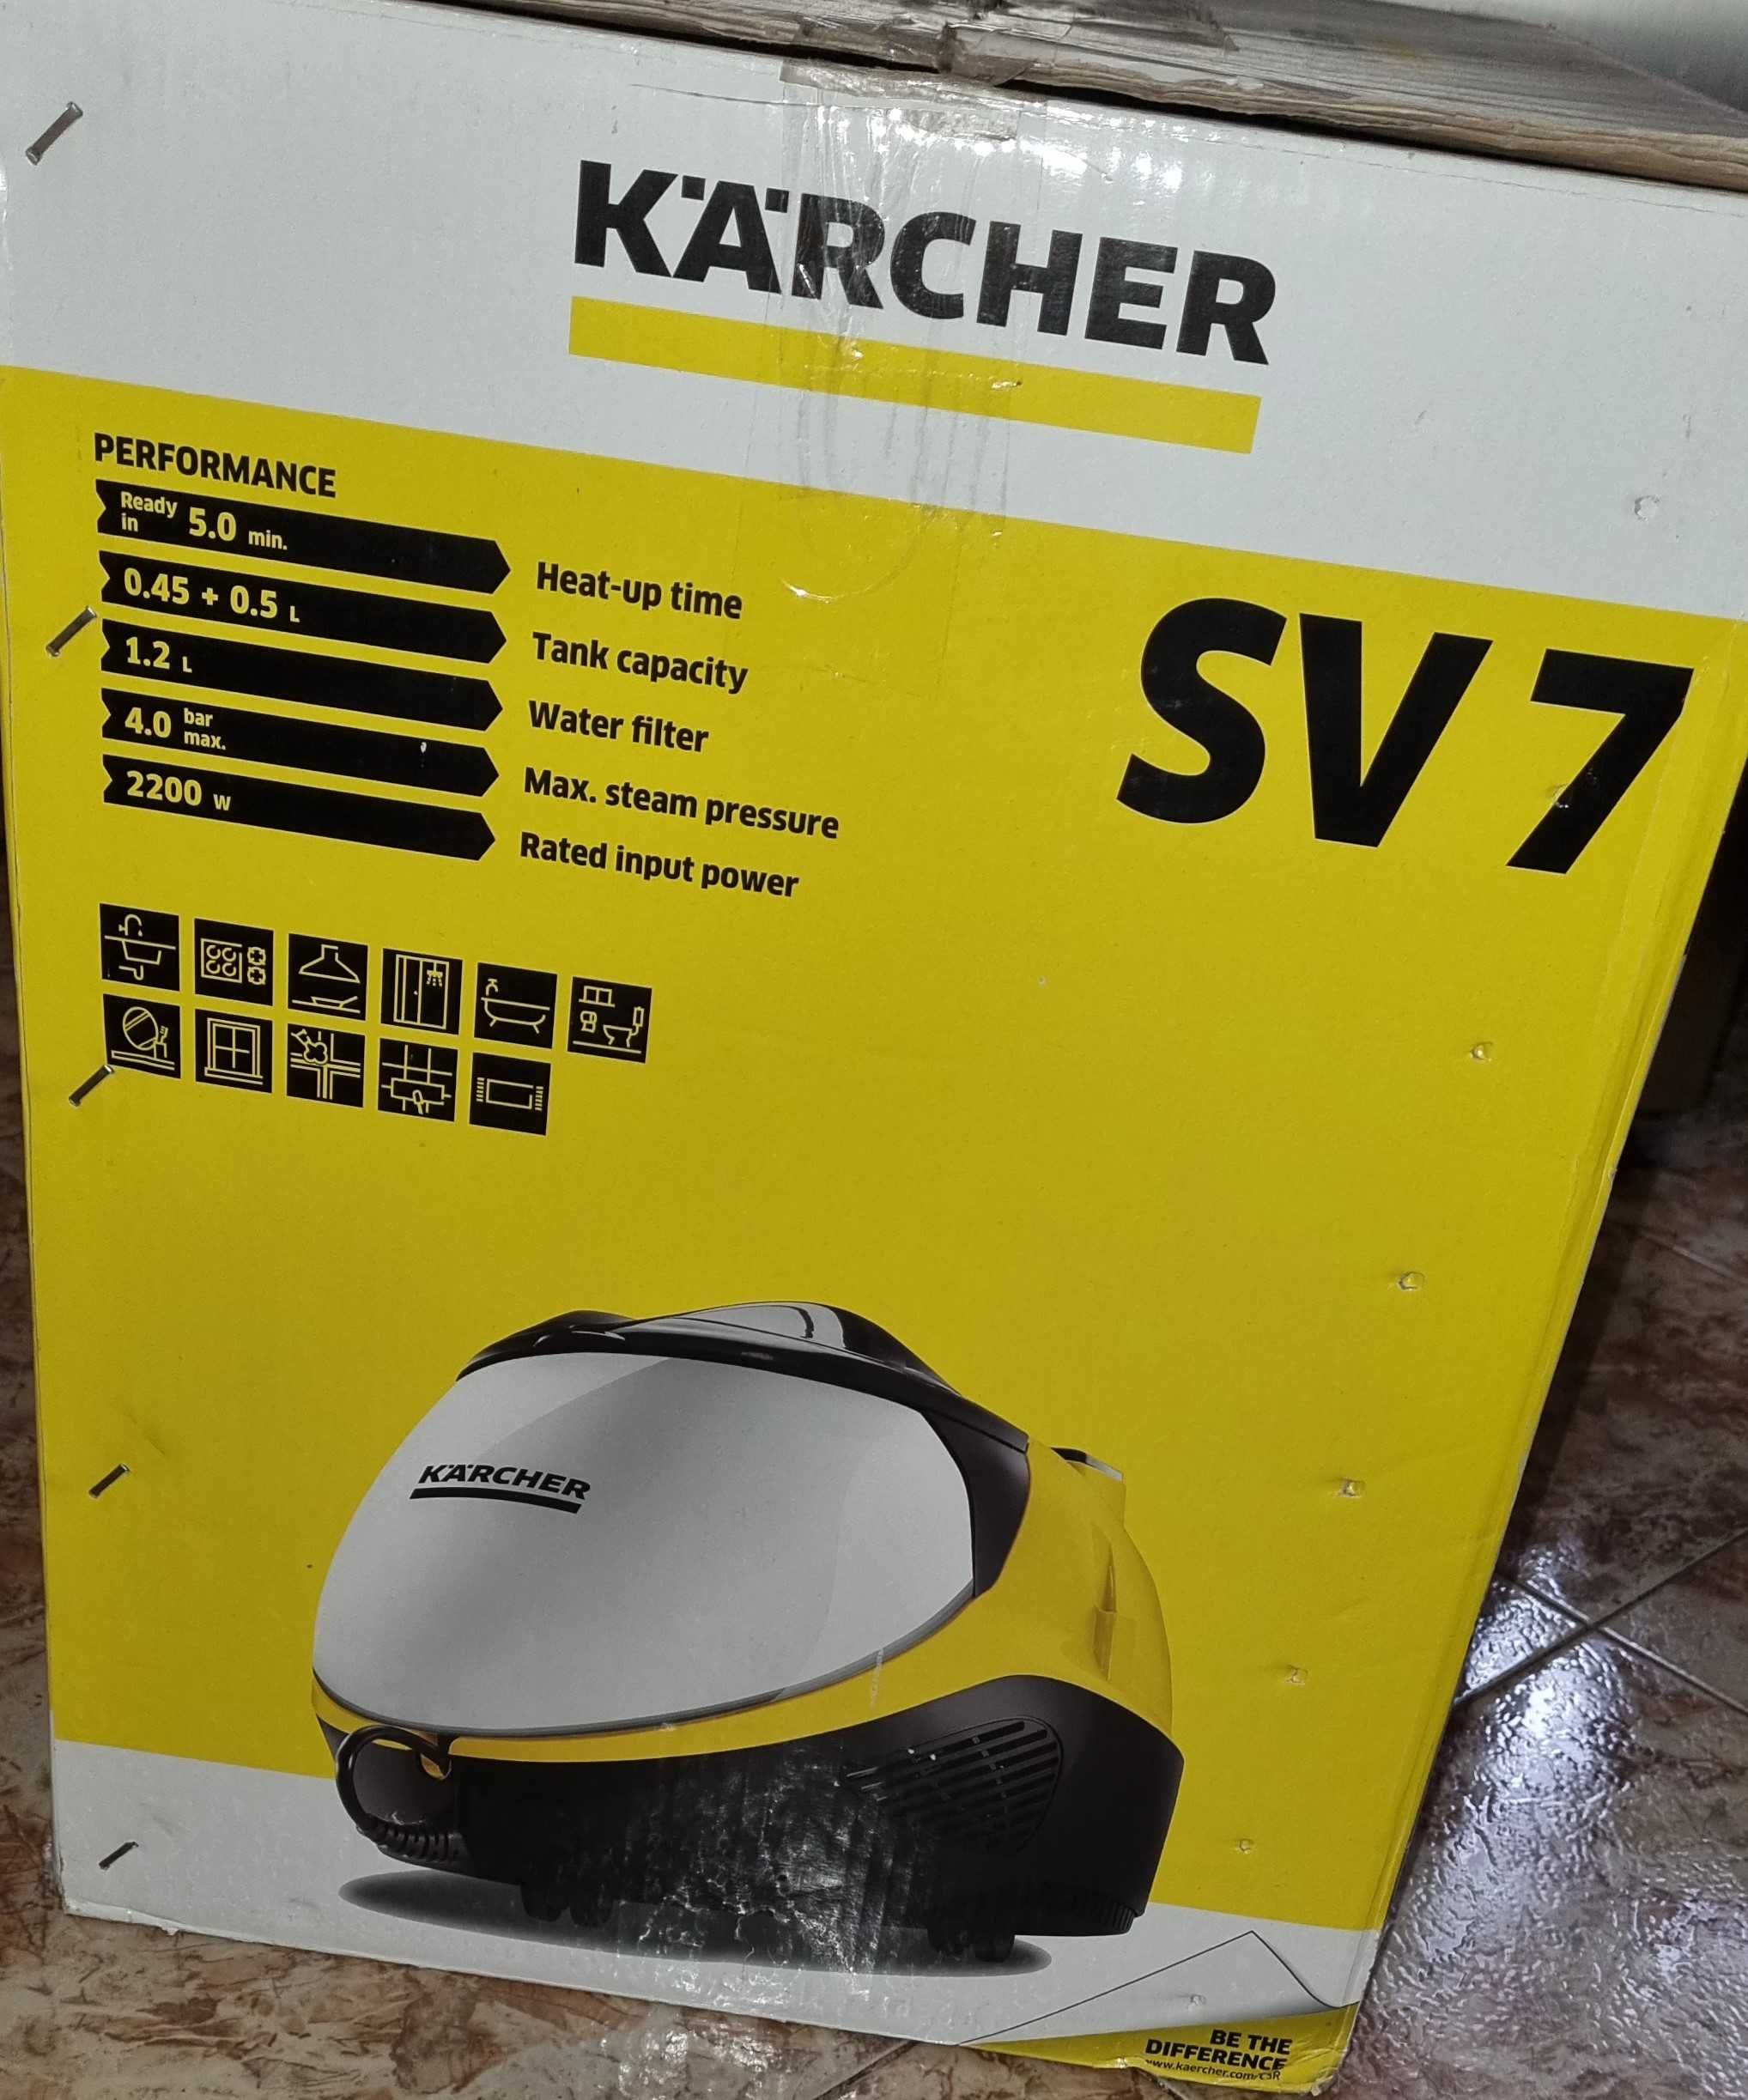 Пароводен екстрактор Karcher sv7 Premium